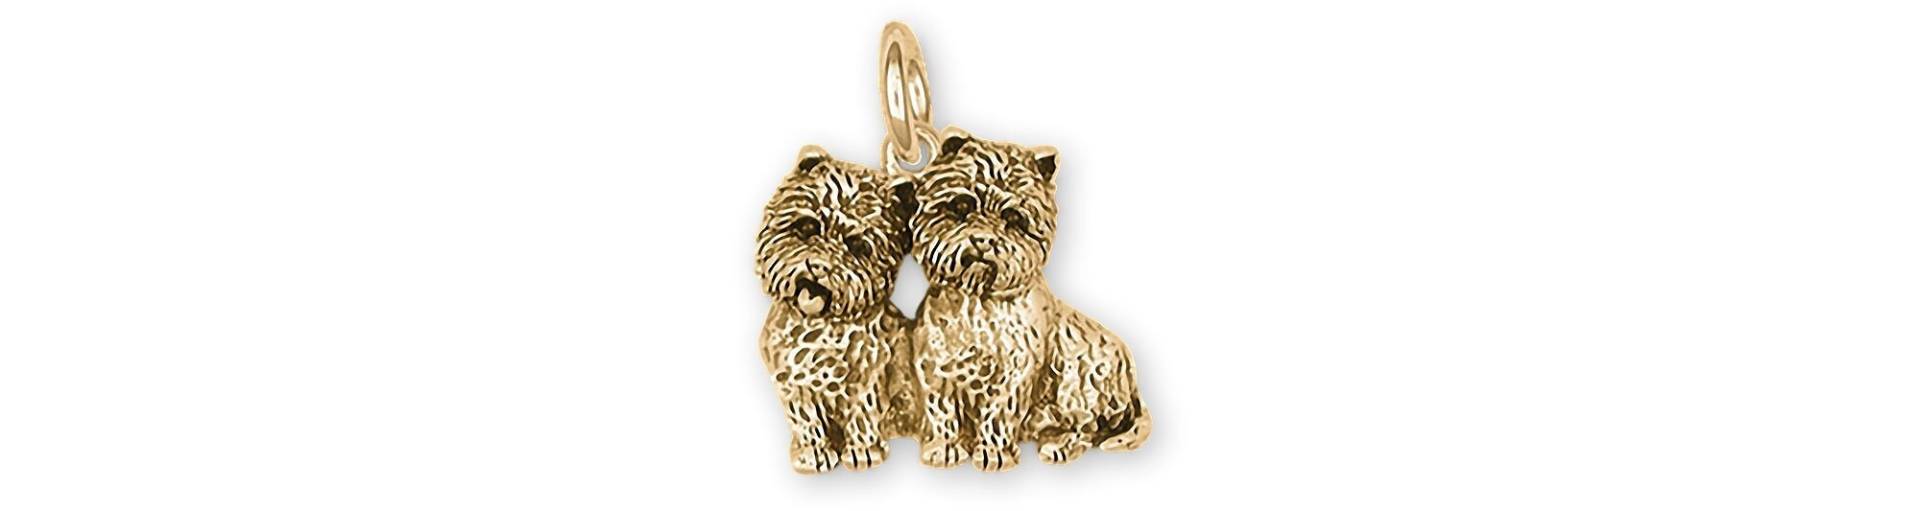 Cairn Schmuck 14 K Gelbgold Handgemachte Terrier Charme Cnwt61x-Cg von Efsterling